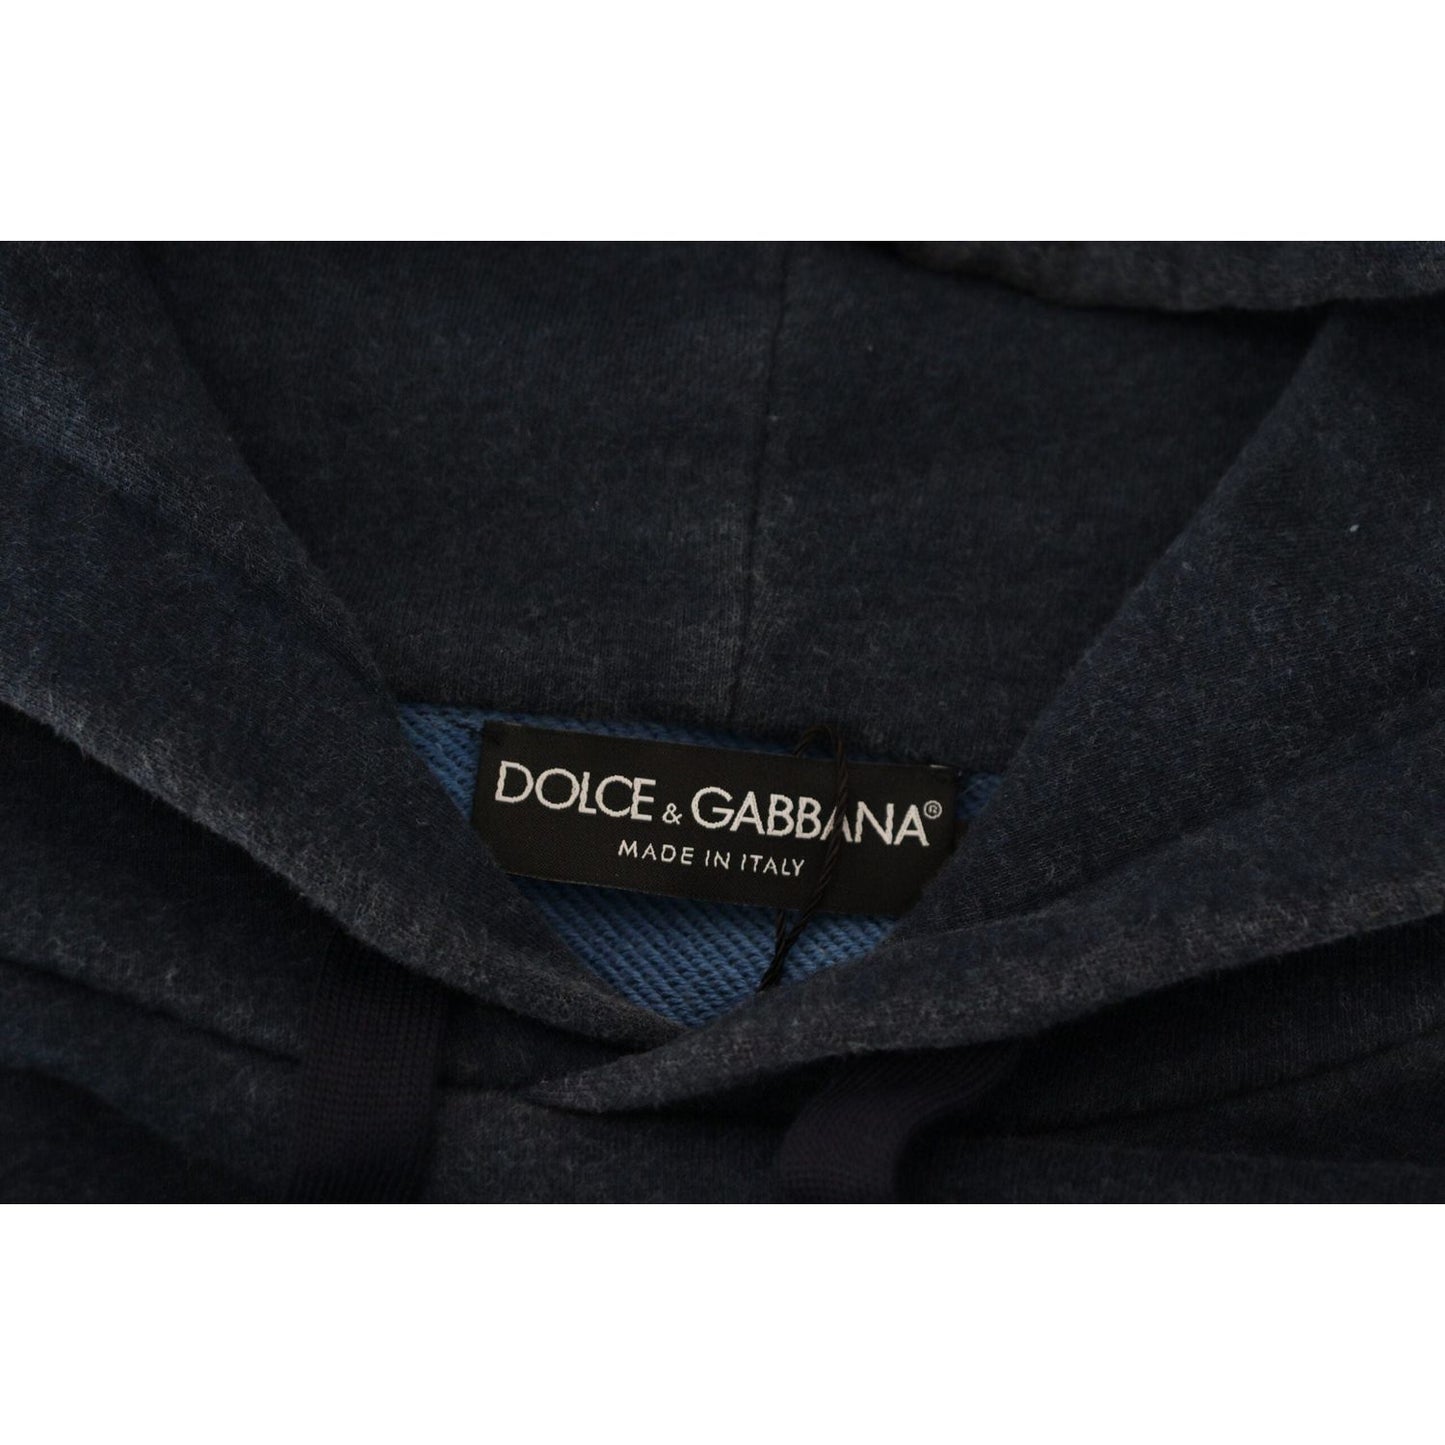 Dolce & Gabbana Elegant Dark Blue Cotton Pullover Sweater dark-blue-cotton-hooded-sweatshirt-sweater